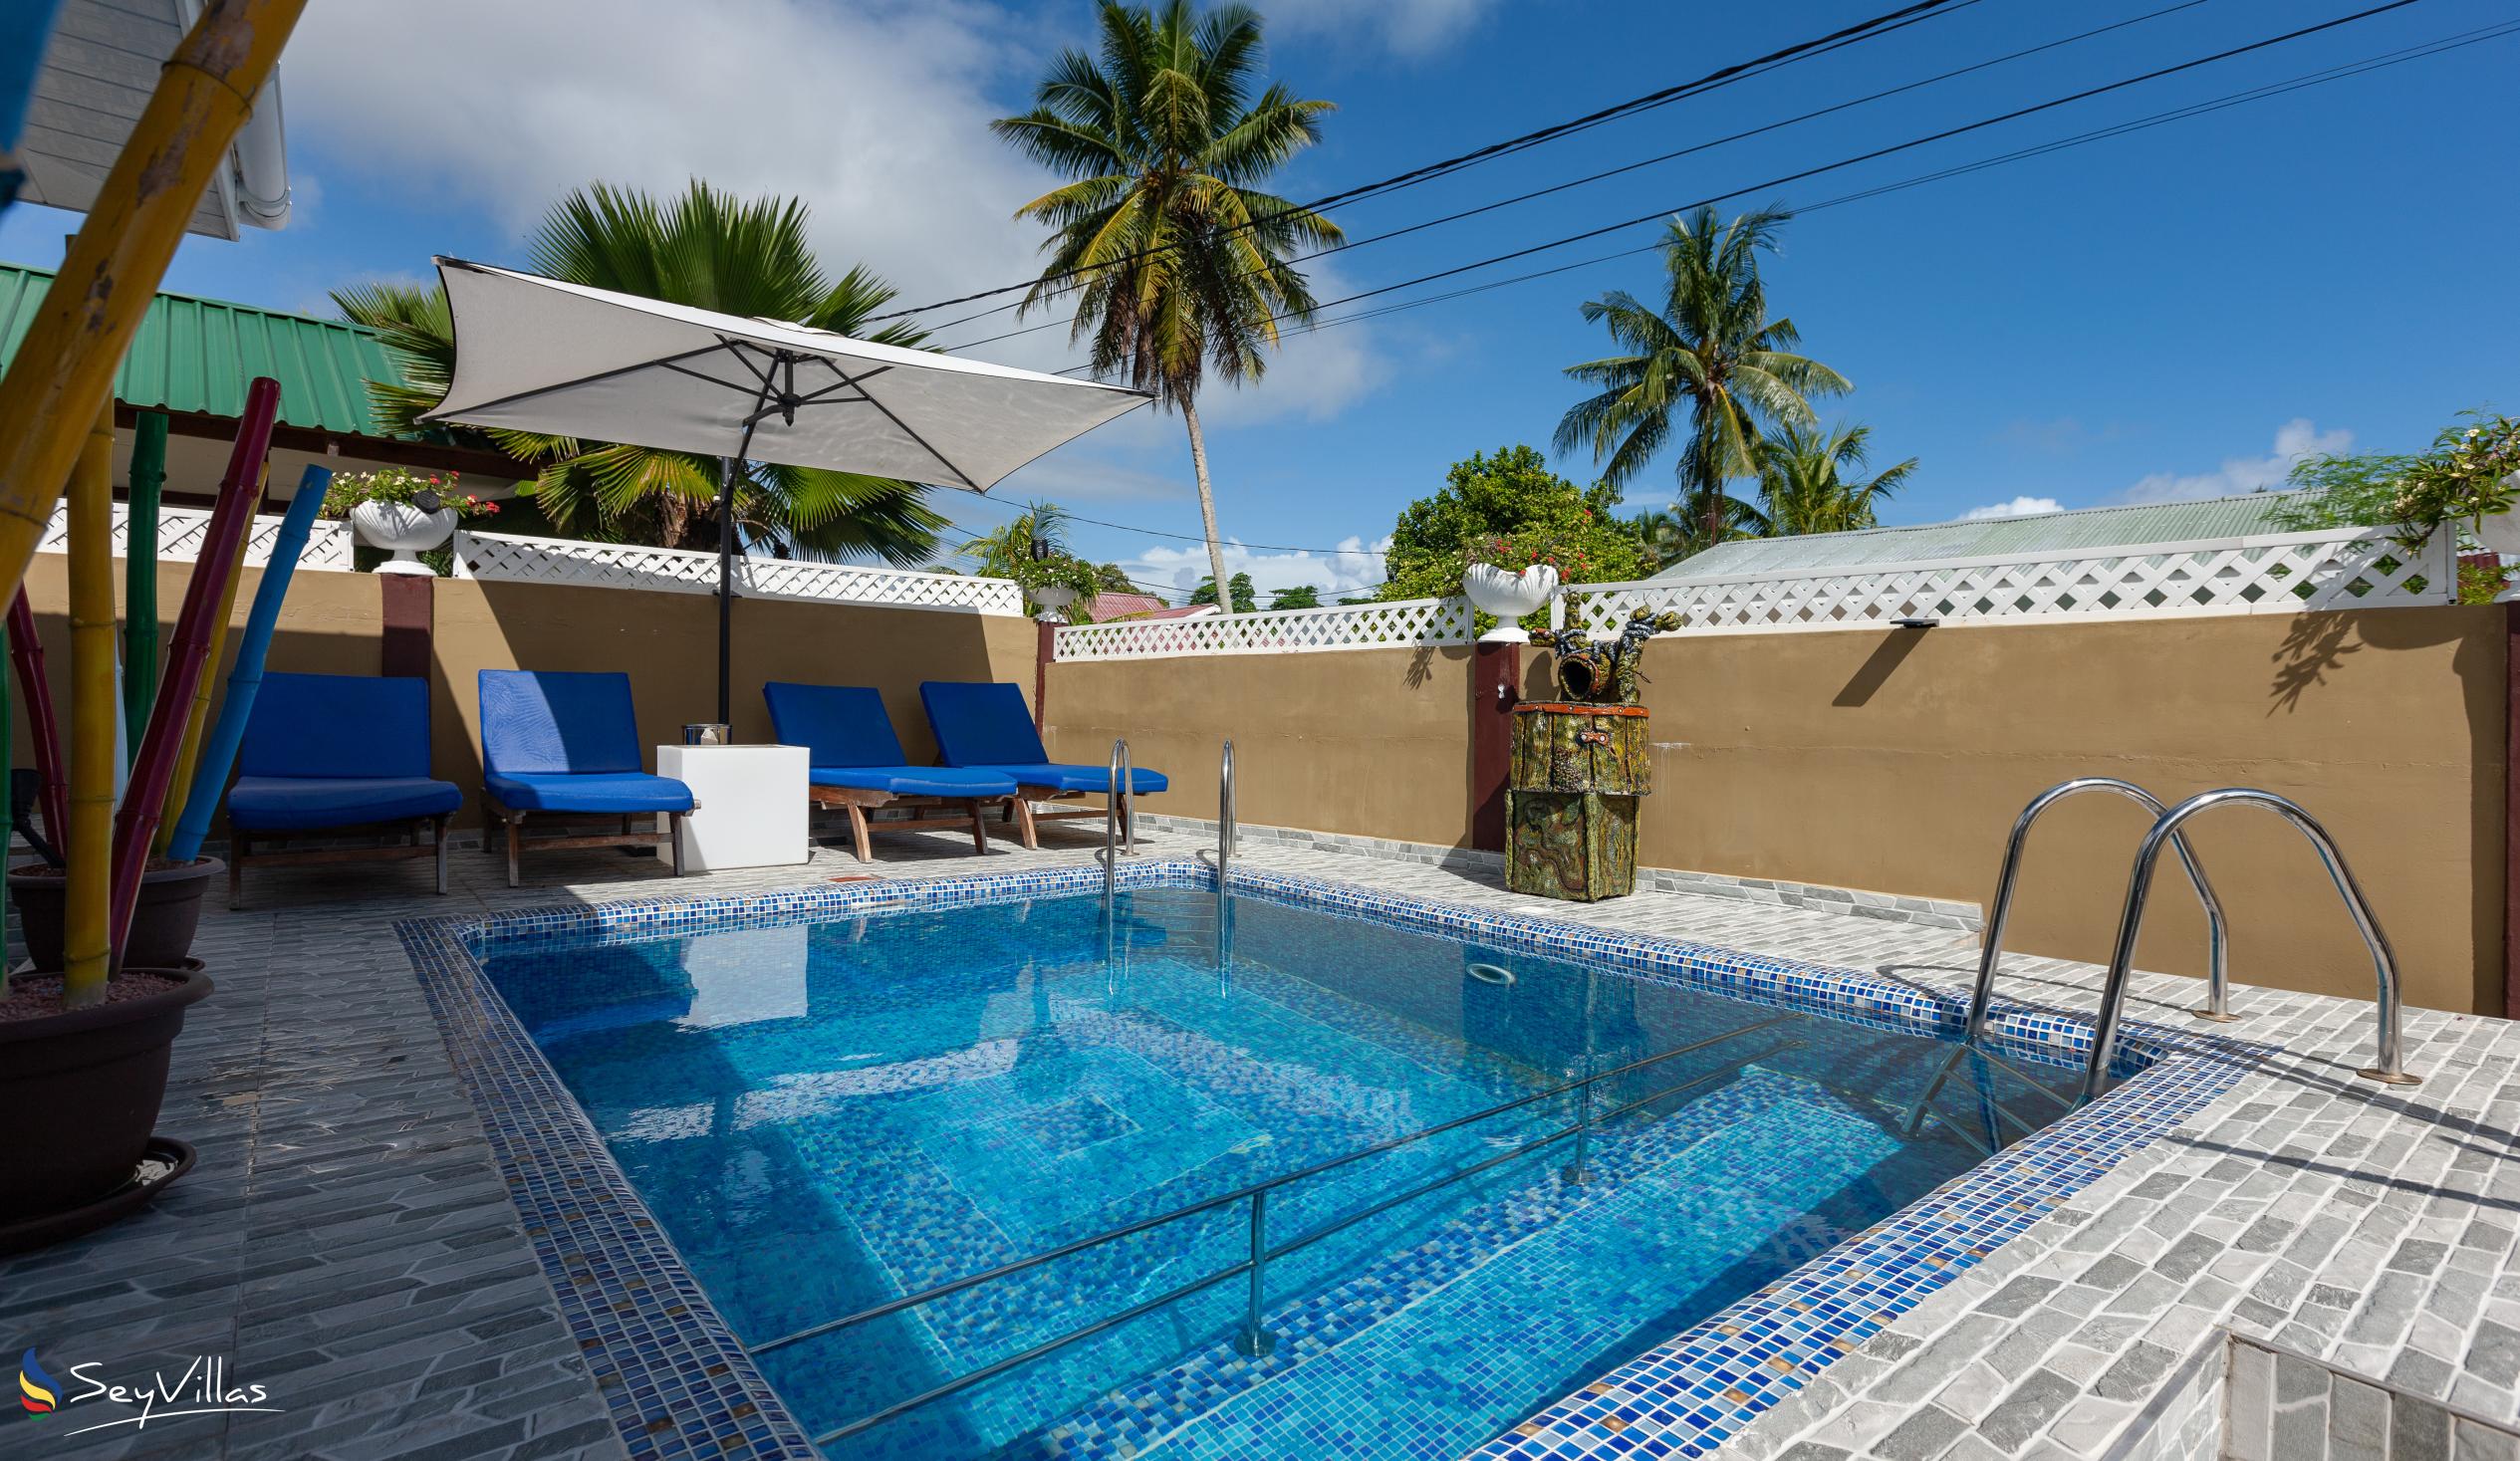 Photo 3: Happy Stay Villa - Outdoor area - Praslin (Seychelles)